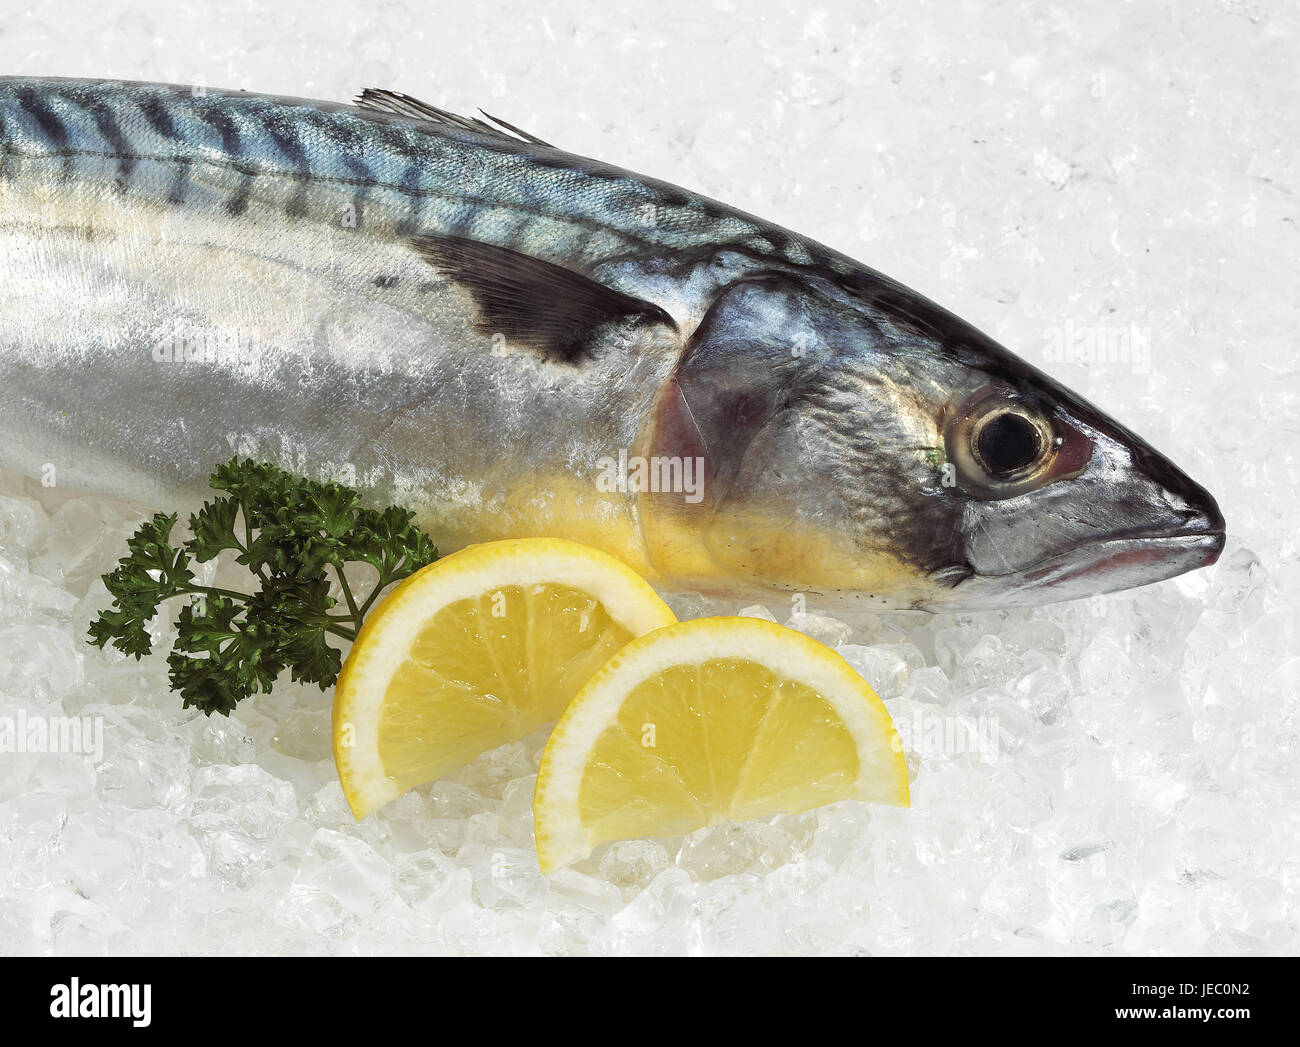 Mackerel, Scomber scombrus, fresh fish on E sharp, slices of lemon, Stock Photo